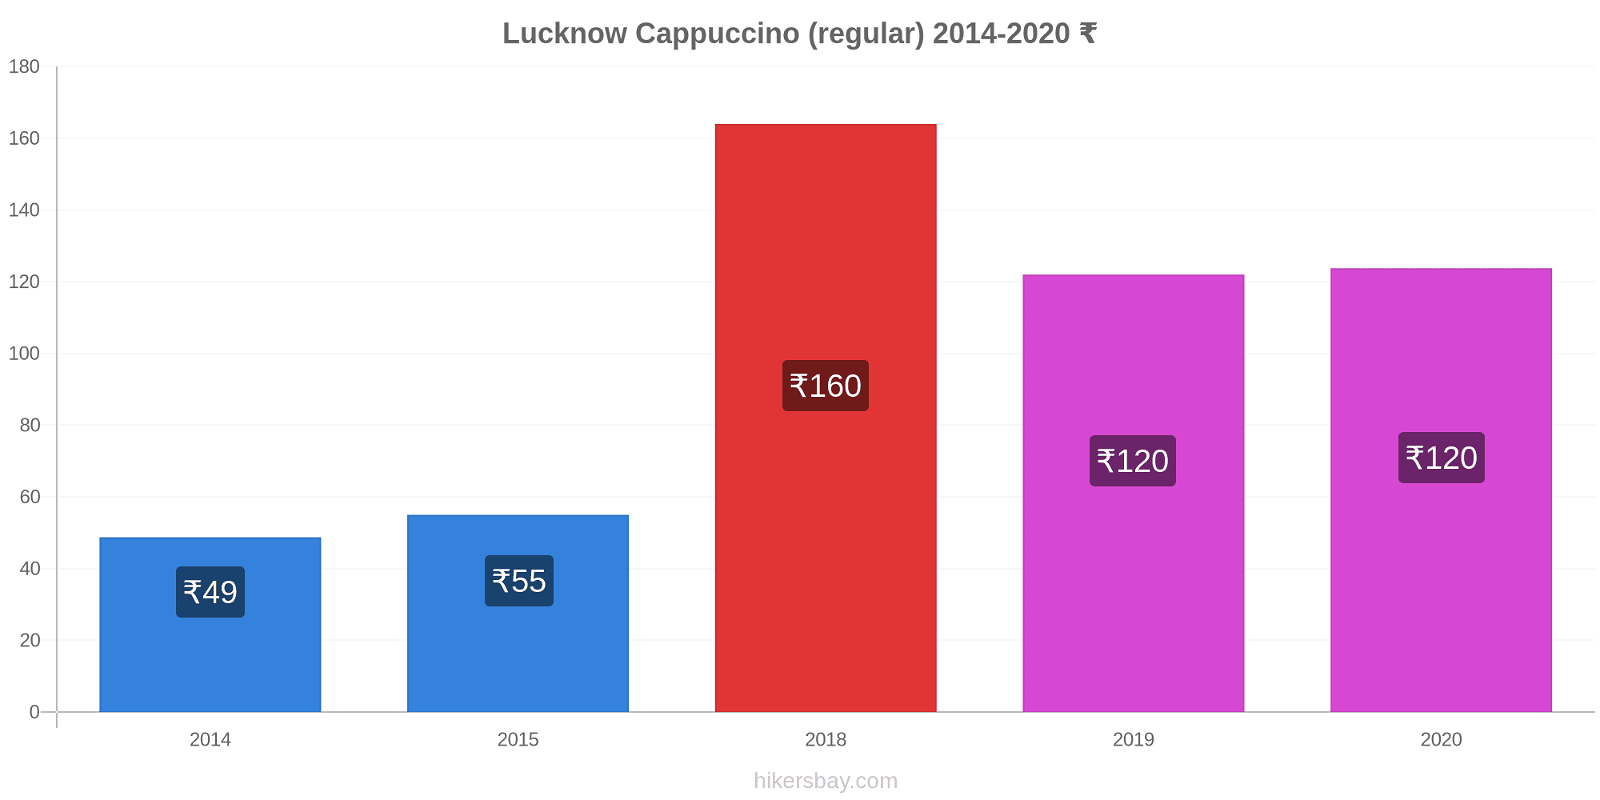 Lucknow price changes Cappuccino (regular) hikersbay.com